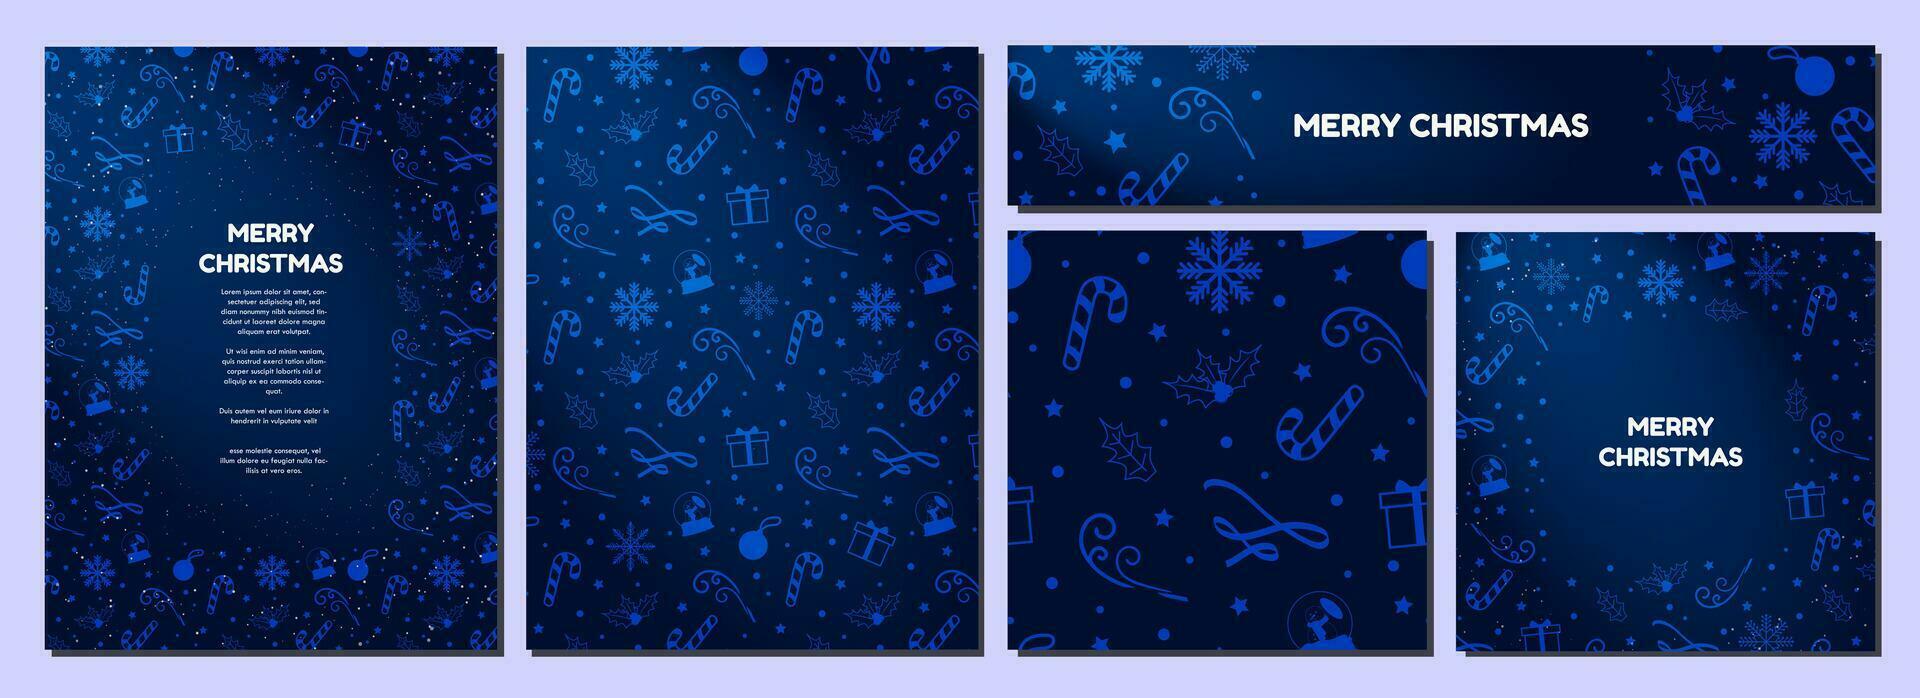 eleganta jul tema bakgrunder i lutning midnatt blå, dekorerad med blåbär blå jul element. skön vinter- mallar. kort, banderoller, affischer, fyrkant mönster. vektor illustration